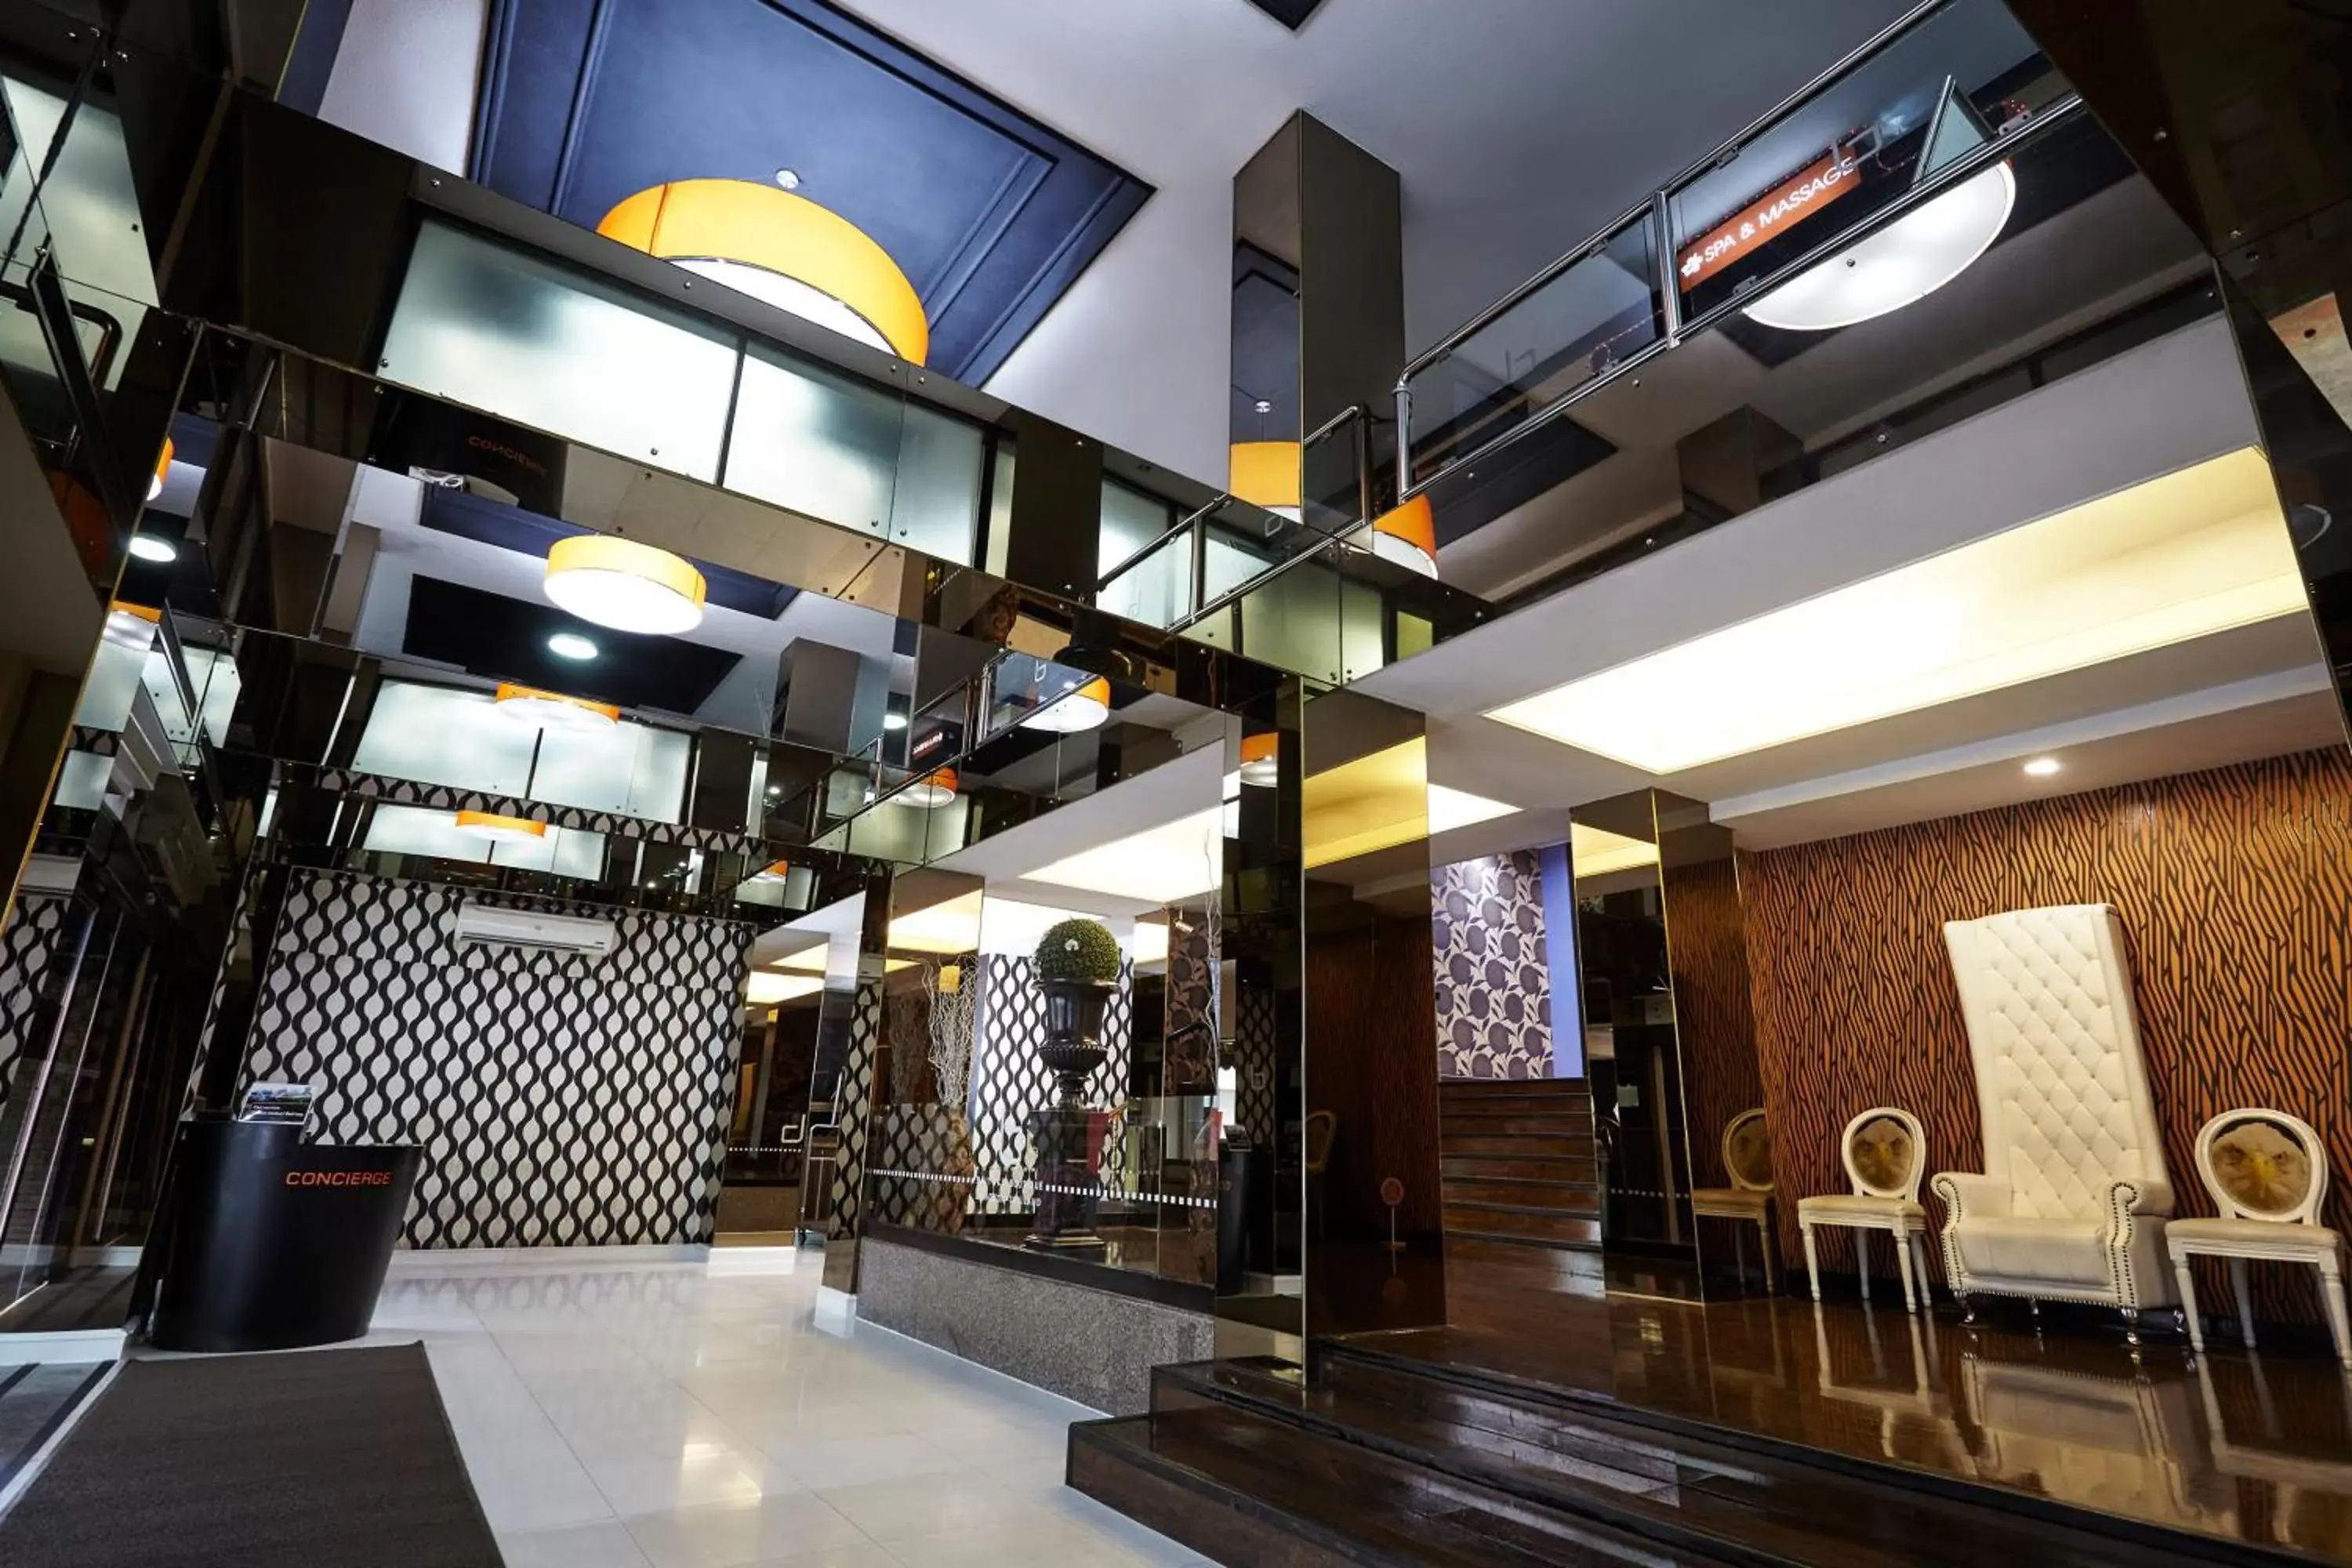 Lobby or reception, Lobby/Reception in Baiyoke Boutique Hotel